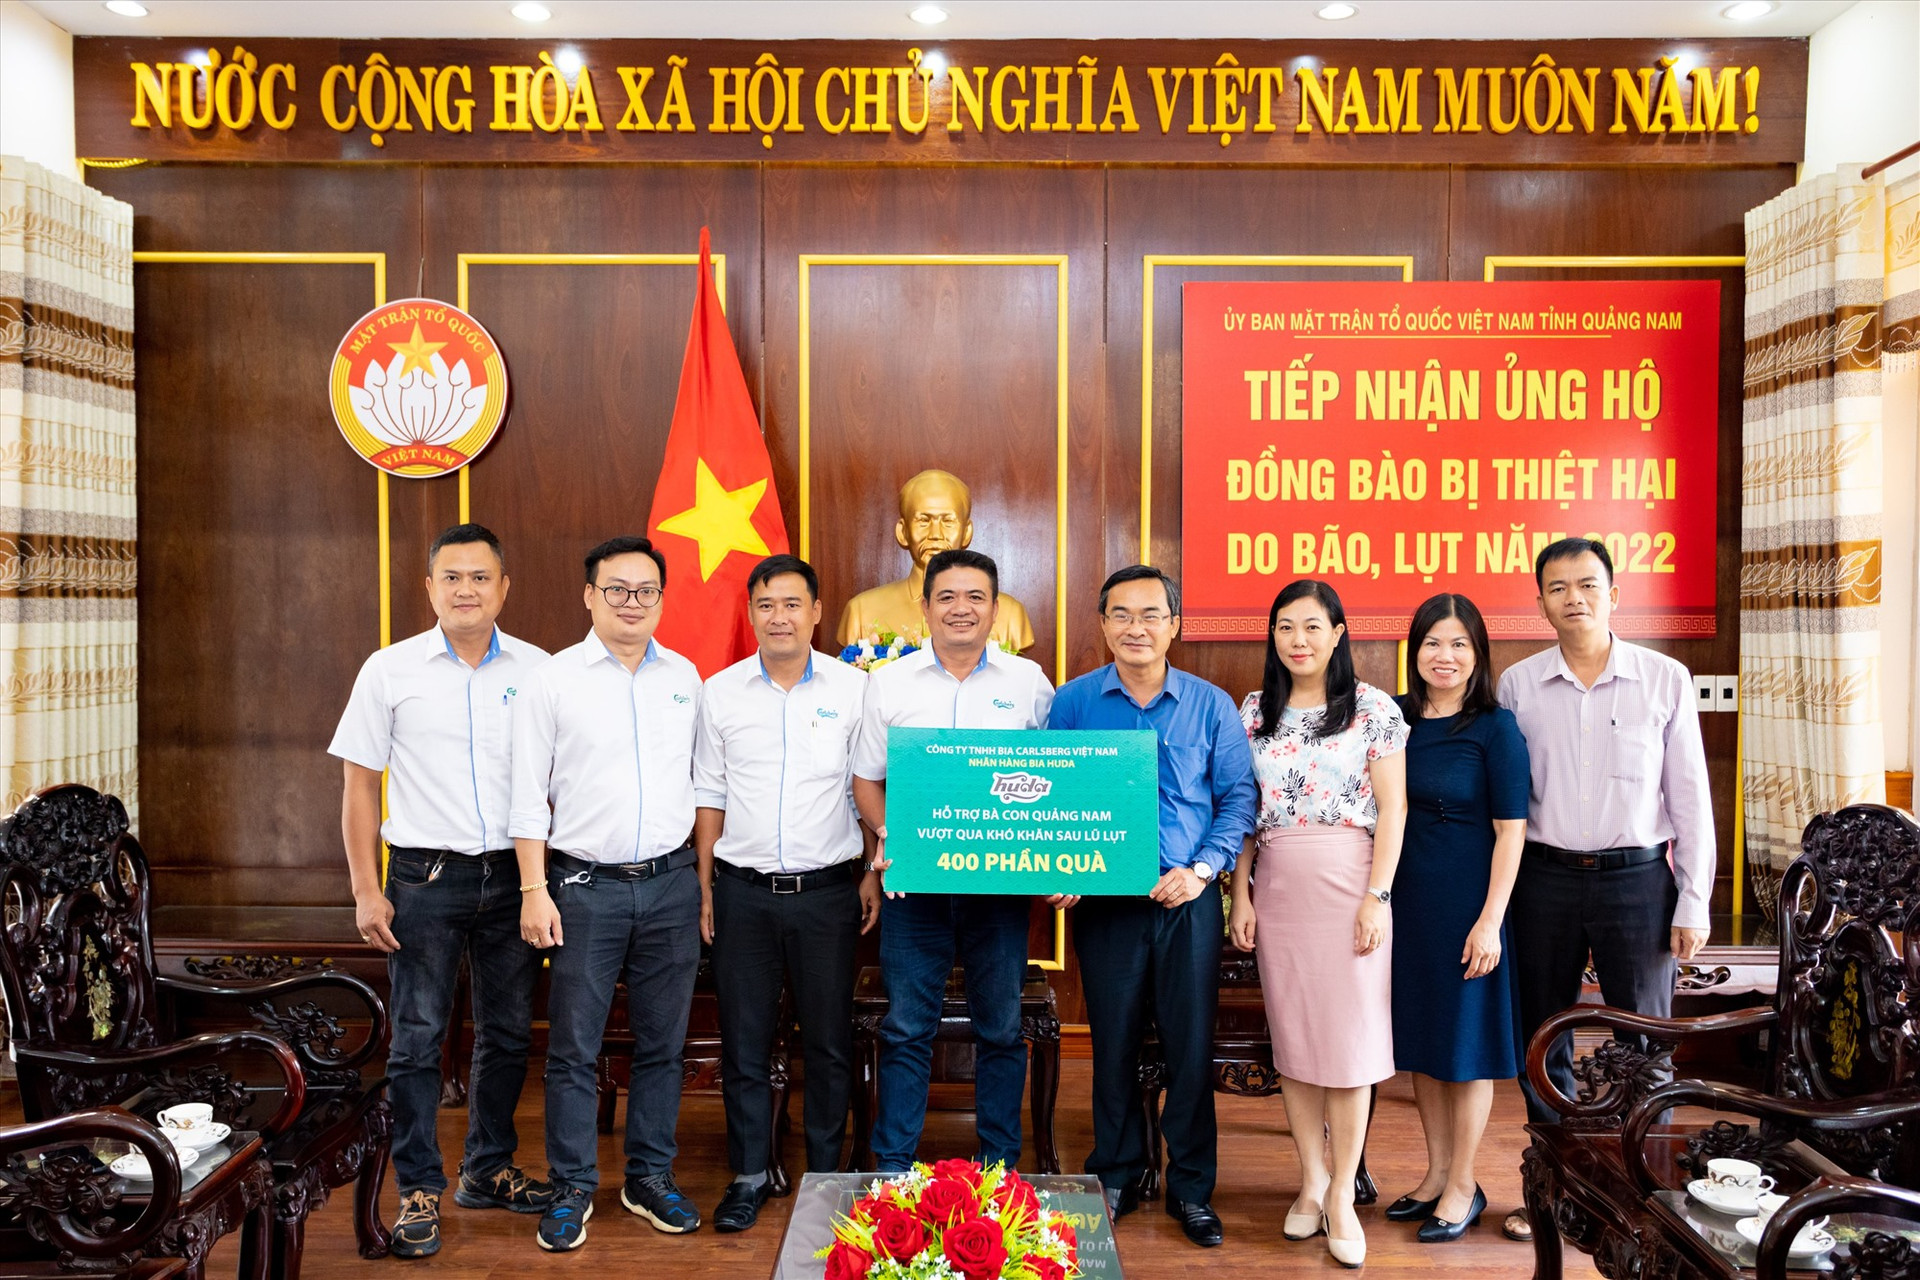 Carlsberg Việt Nam trao quà hỗ trợ cho người dân bị thiệt hại do mưa lũ thông tha Uỷ ban MTTQ Việt Nam tỉnh Quảng Nam. Ảnh: Đ.Y